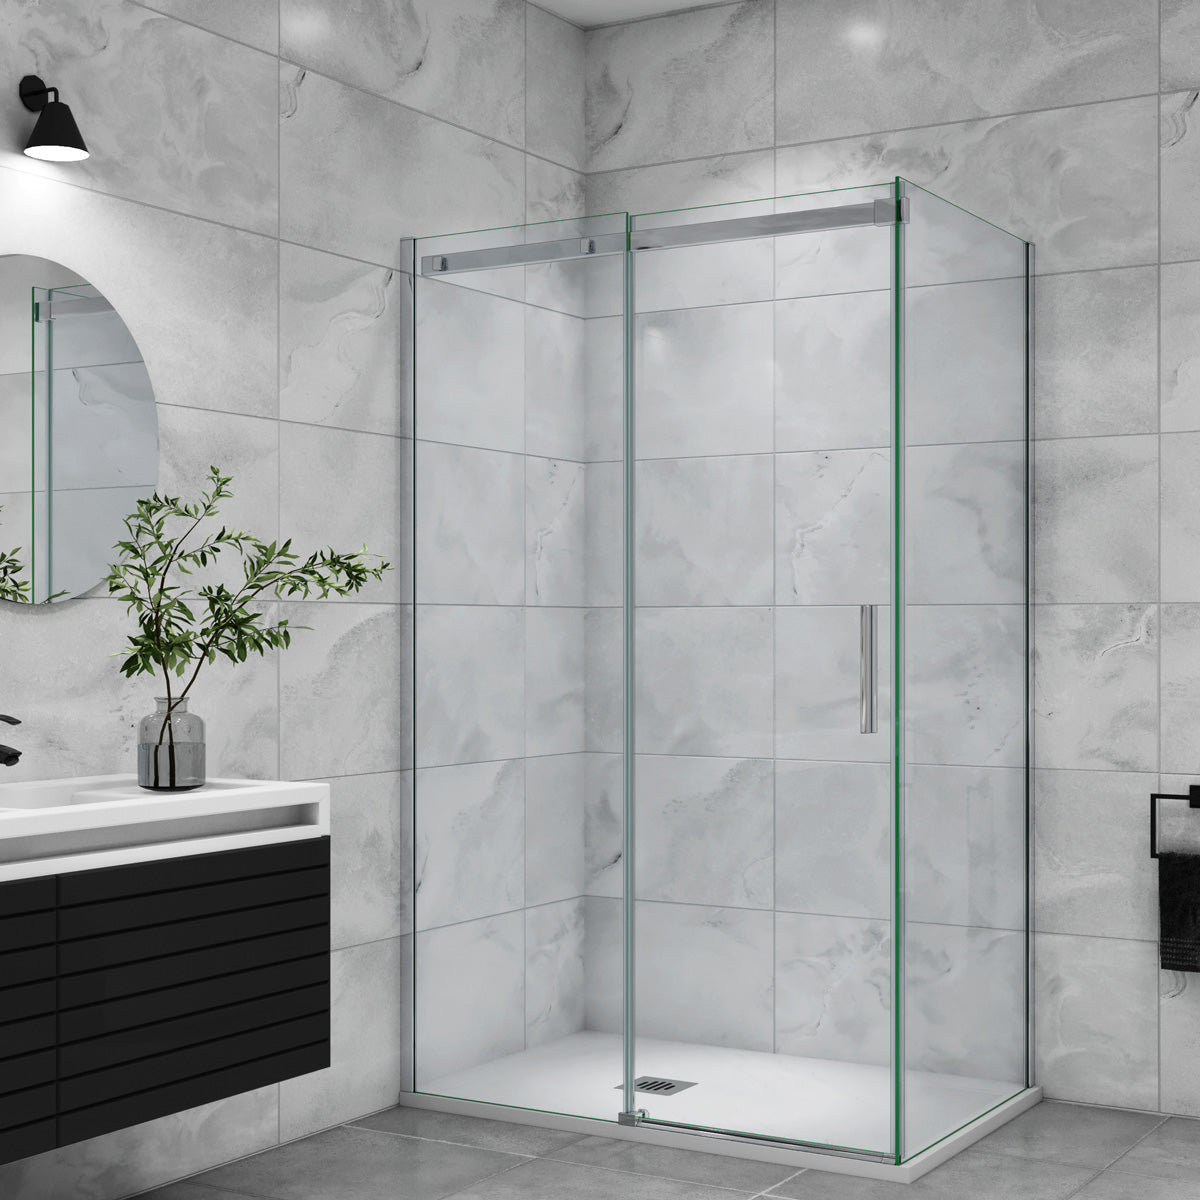 Duschtür+Seitenwand Schiebetür 160x70 cm Glasstärke 6mm Dusche Duschabtrennung Duschkabine